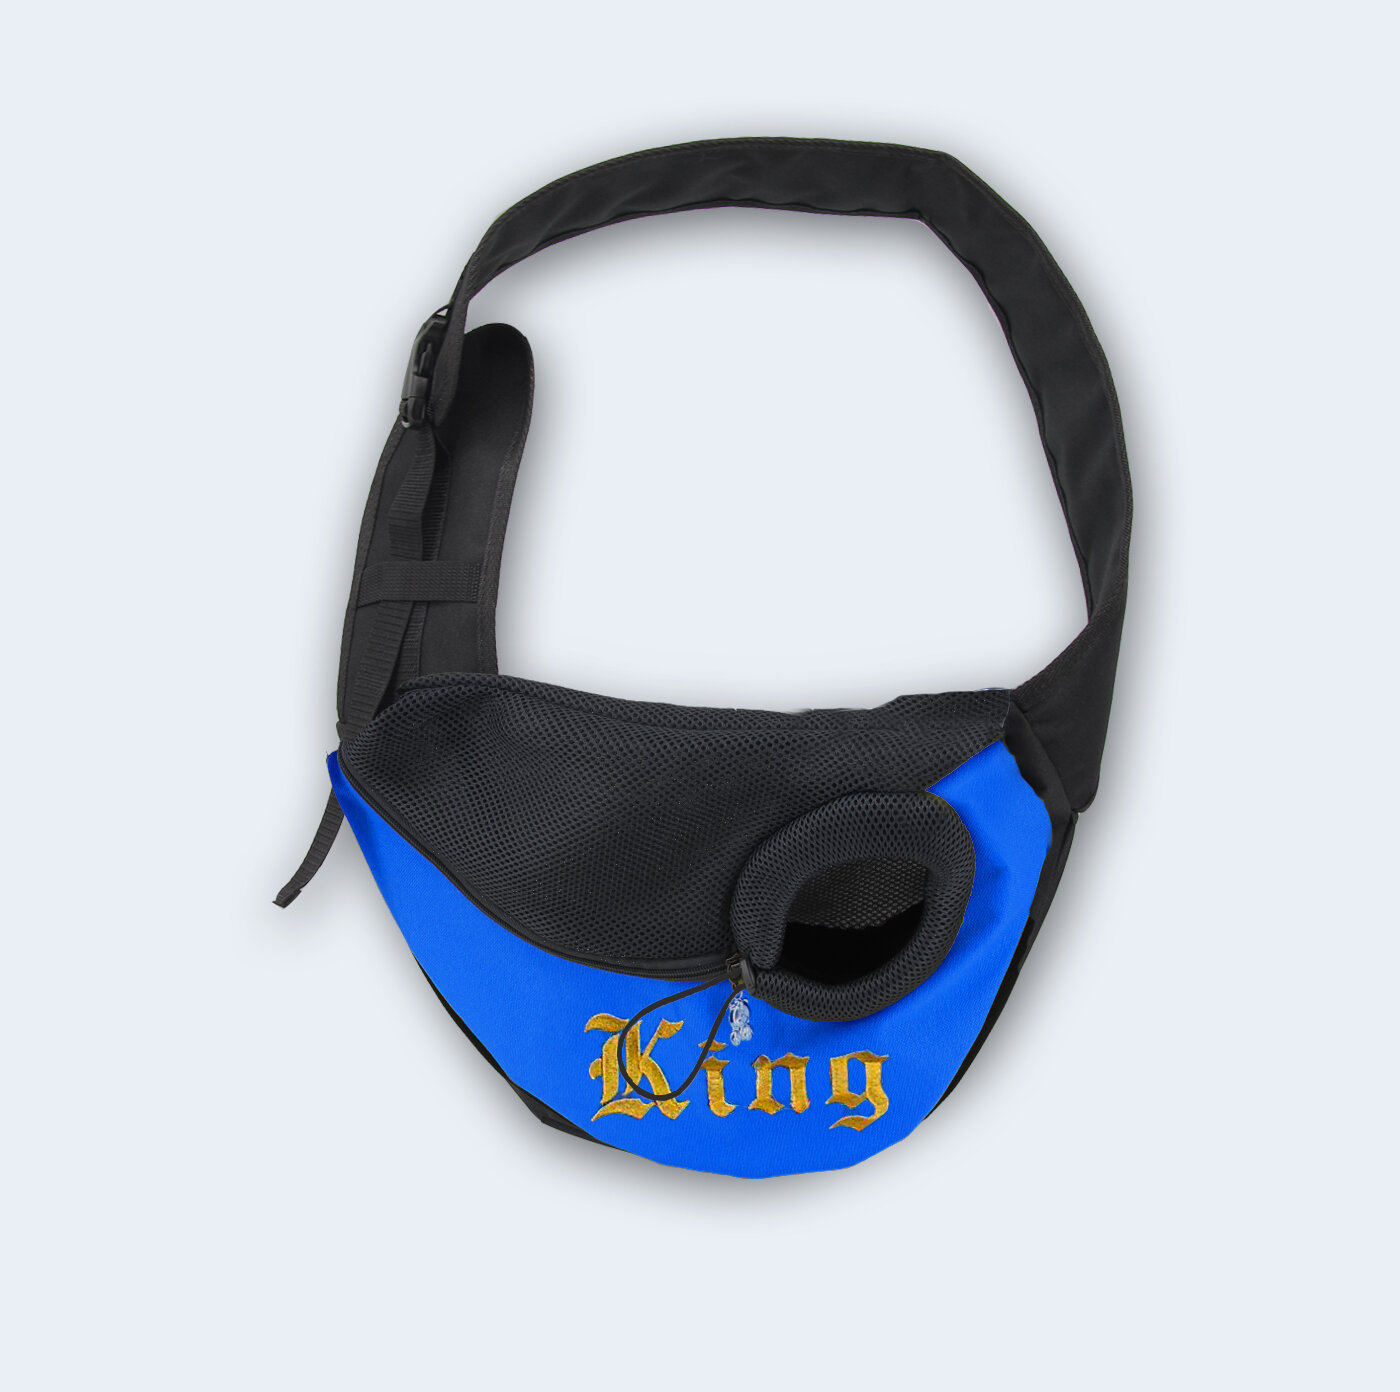 Слинг Melenni Стандарт King XS синий/черная сетка, 33Х19Х9, см;Вес: 220 гр.